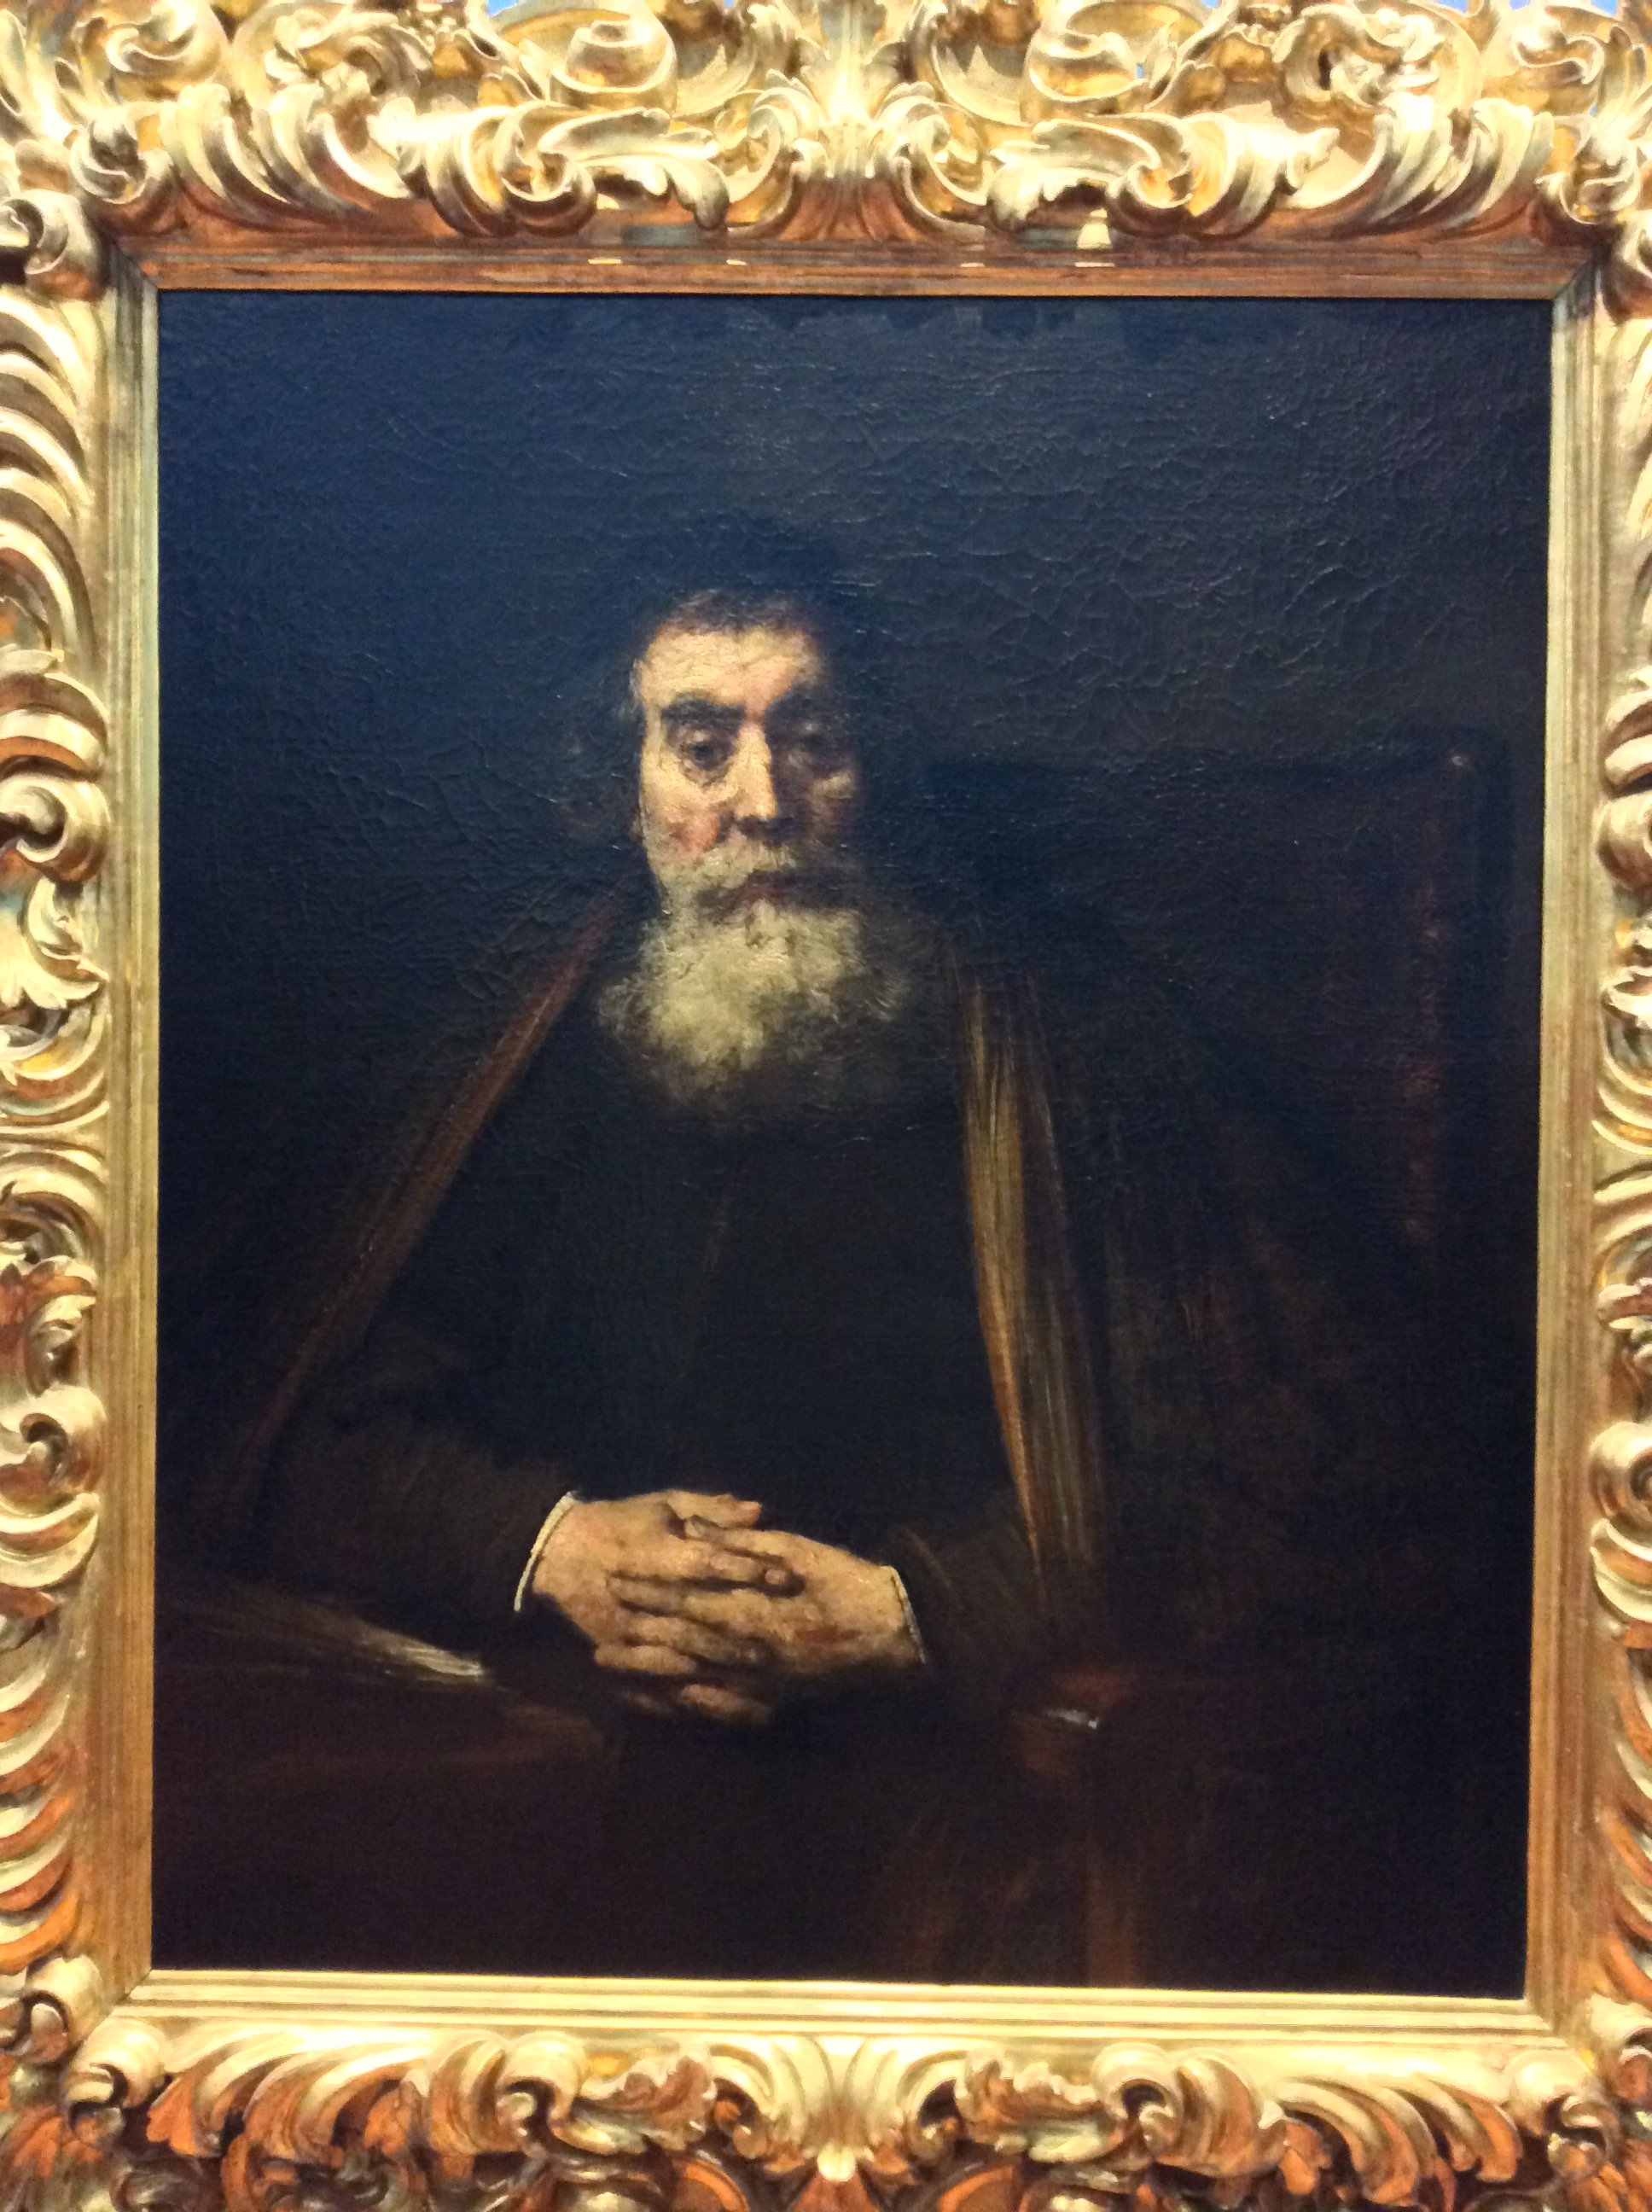 렘브란트, '자화상'3, 피렌체 우피치미술관. 삶의 나락을 맛본 렘브란트의 노년을 묘사한 자화상. 하지만 그는 죽는 순간까지 자신의 그림을 그리기 위해 노력했습니다.